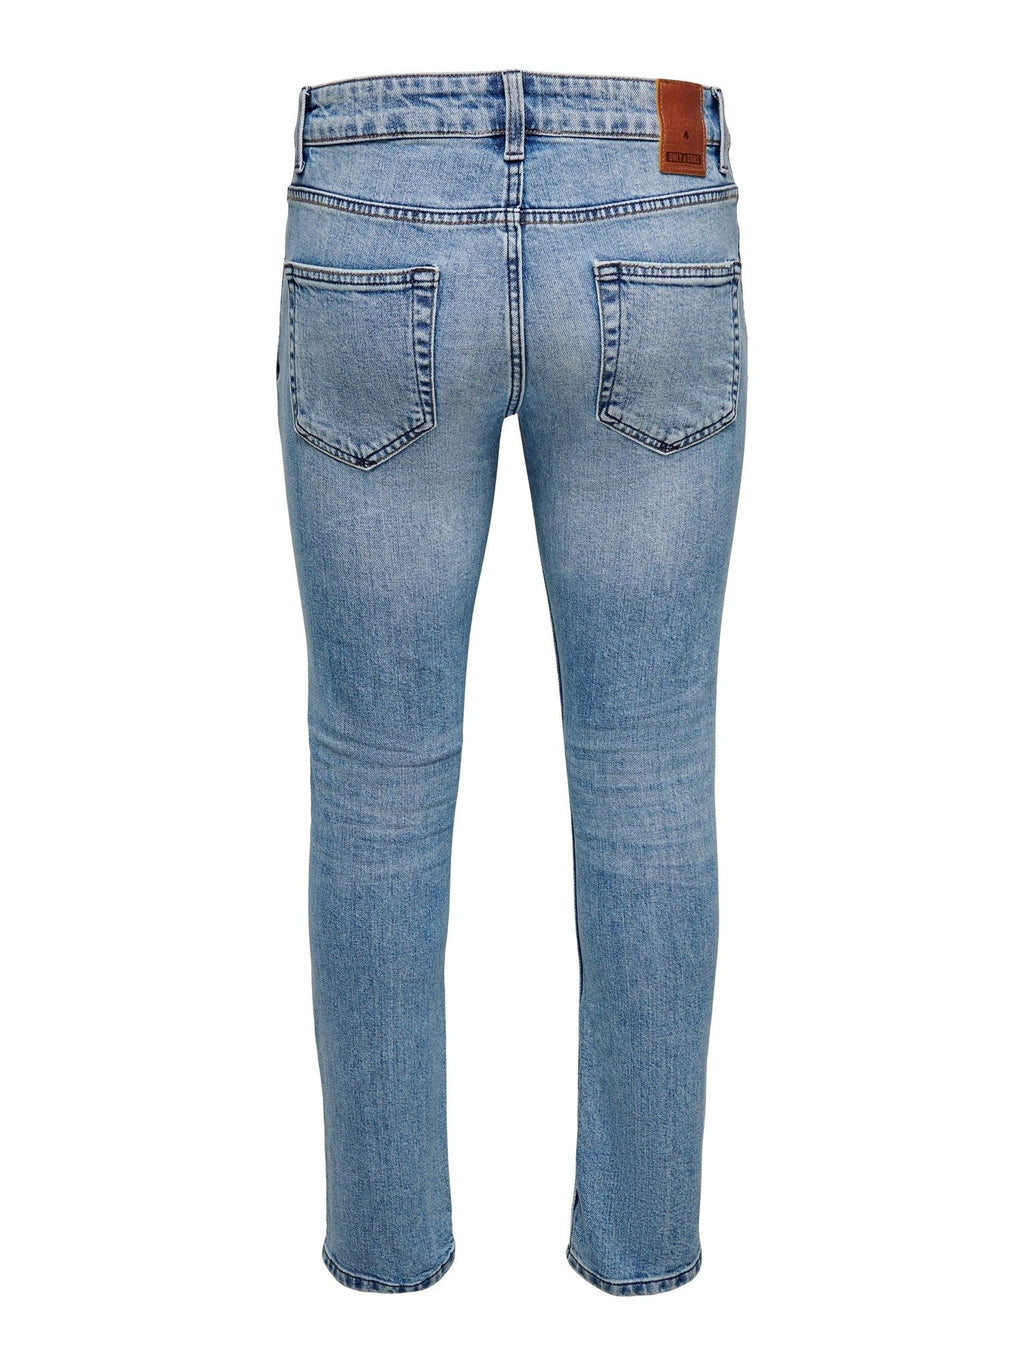 Loom slim fit può jeans - denim blu